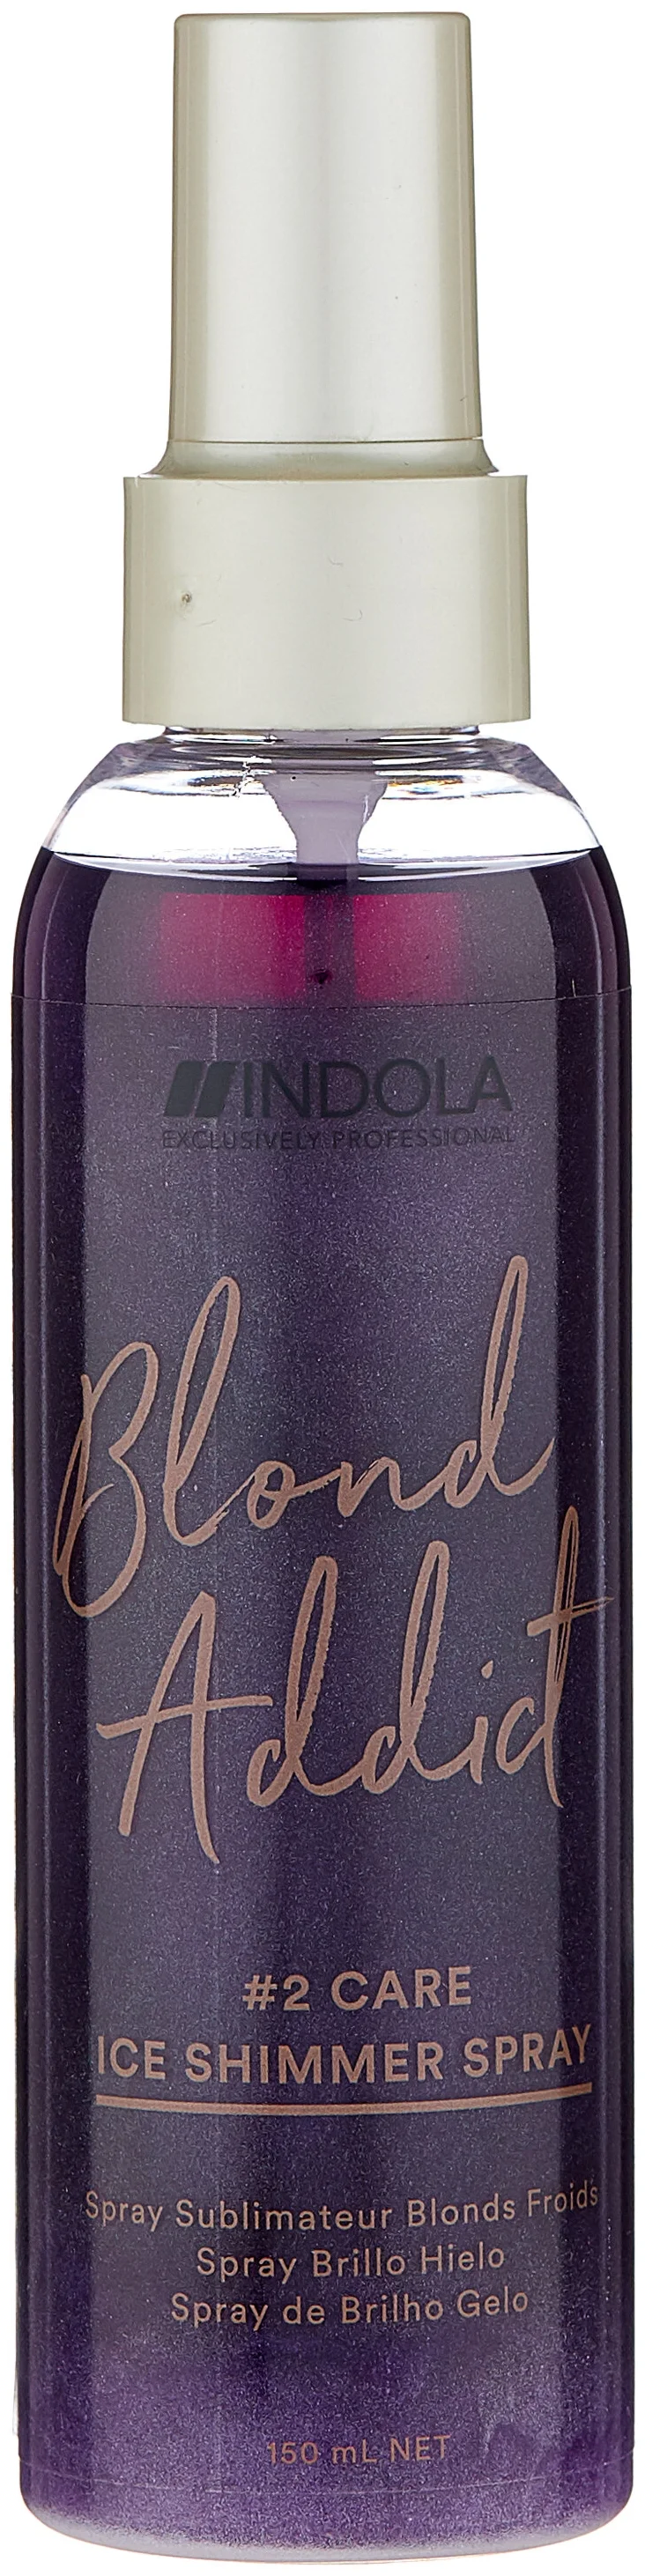 Indola Blond Addict Ice Shimmer - потребности кожи головы и волос: УФ-защита, закрашивание седины, тонирование